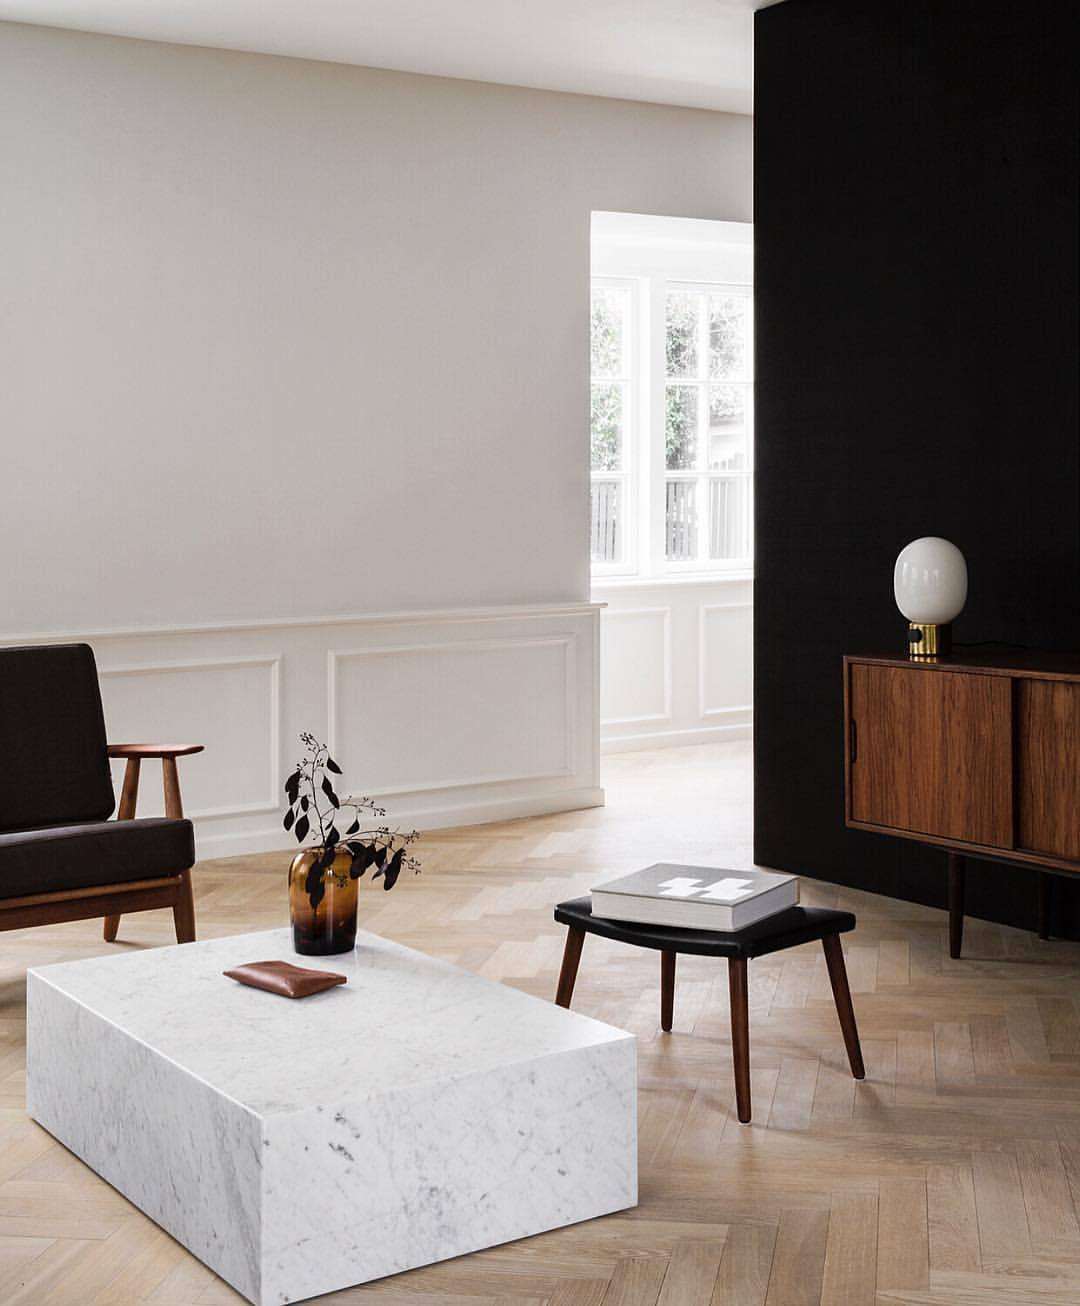 aestatemagazine:Inspirations: Living Room — For more Living Room inspirations visit